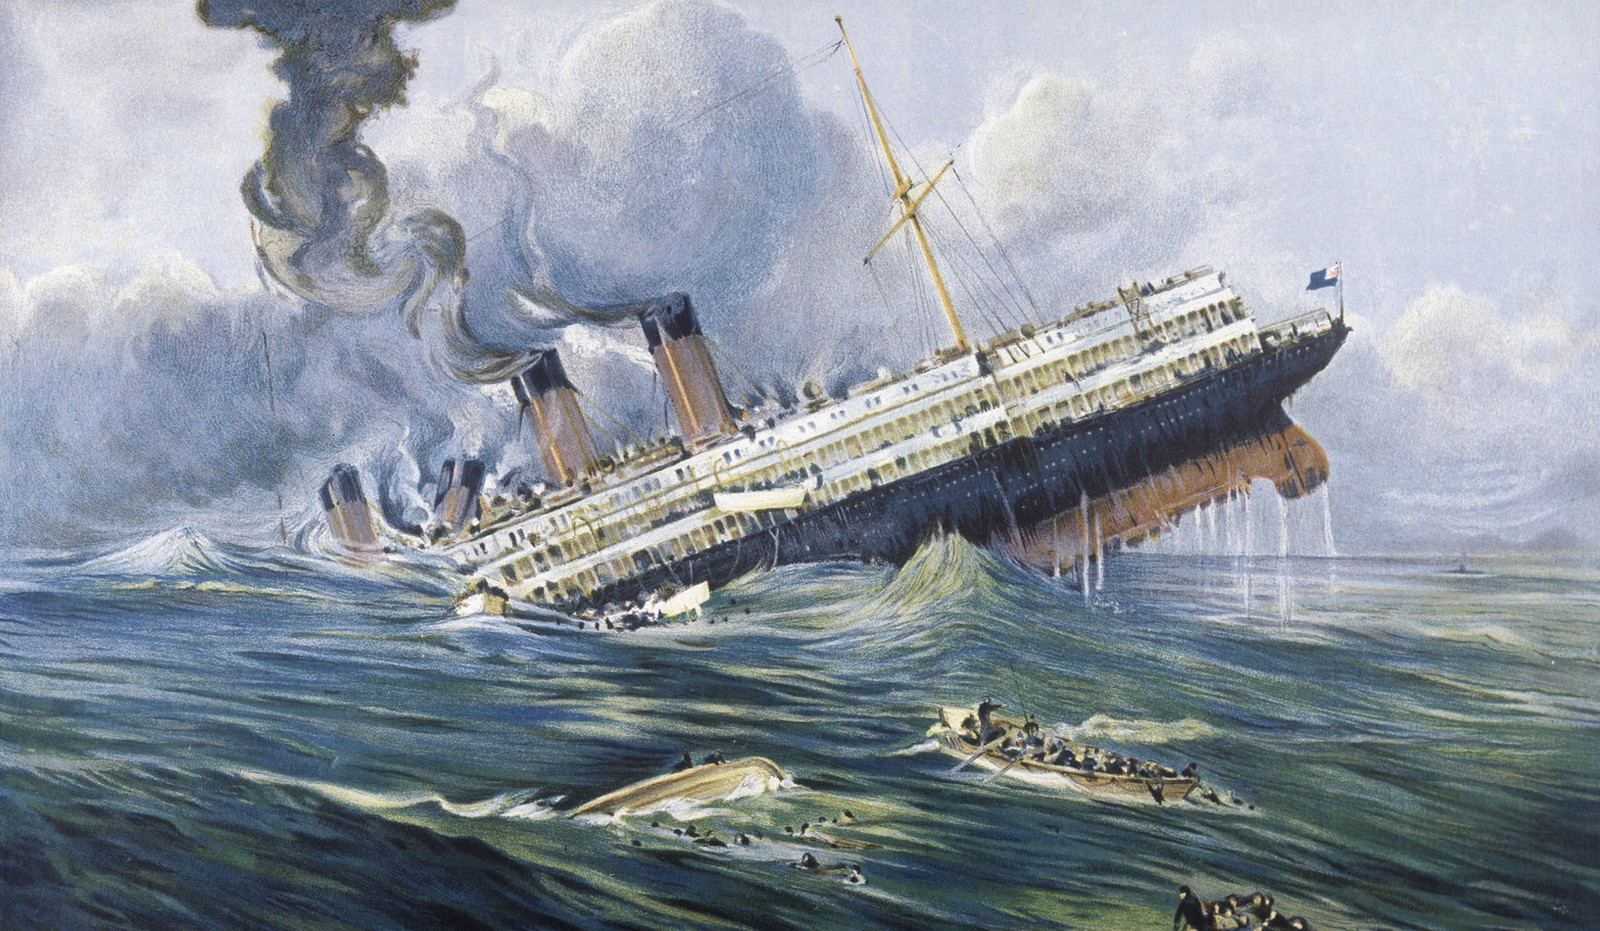 Le torpillage du Lusitania, le 7 mai 1915, par un sous-marin allemand,
Auteurs  : MARY EVANS/SIPA,
Numéro de reportage  : 51337473_000001.